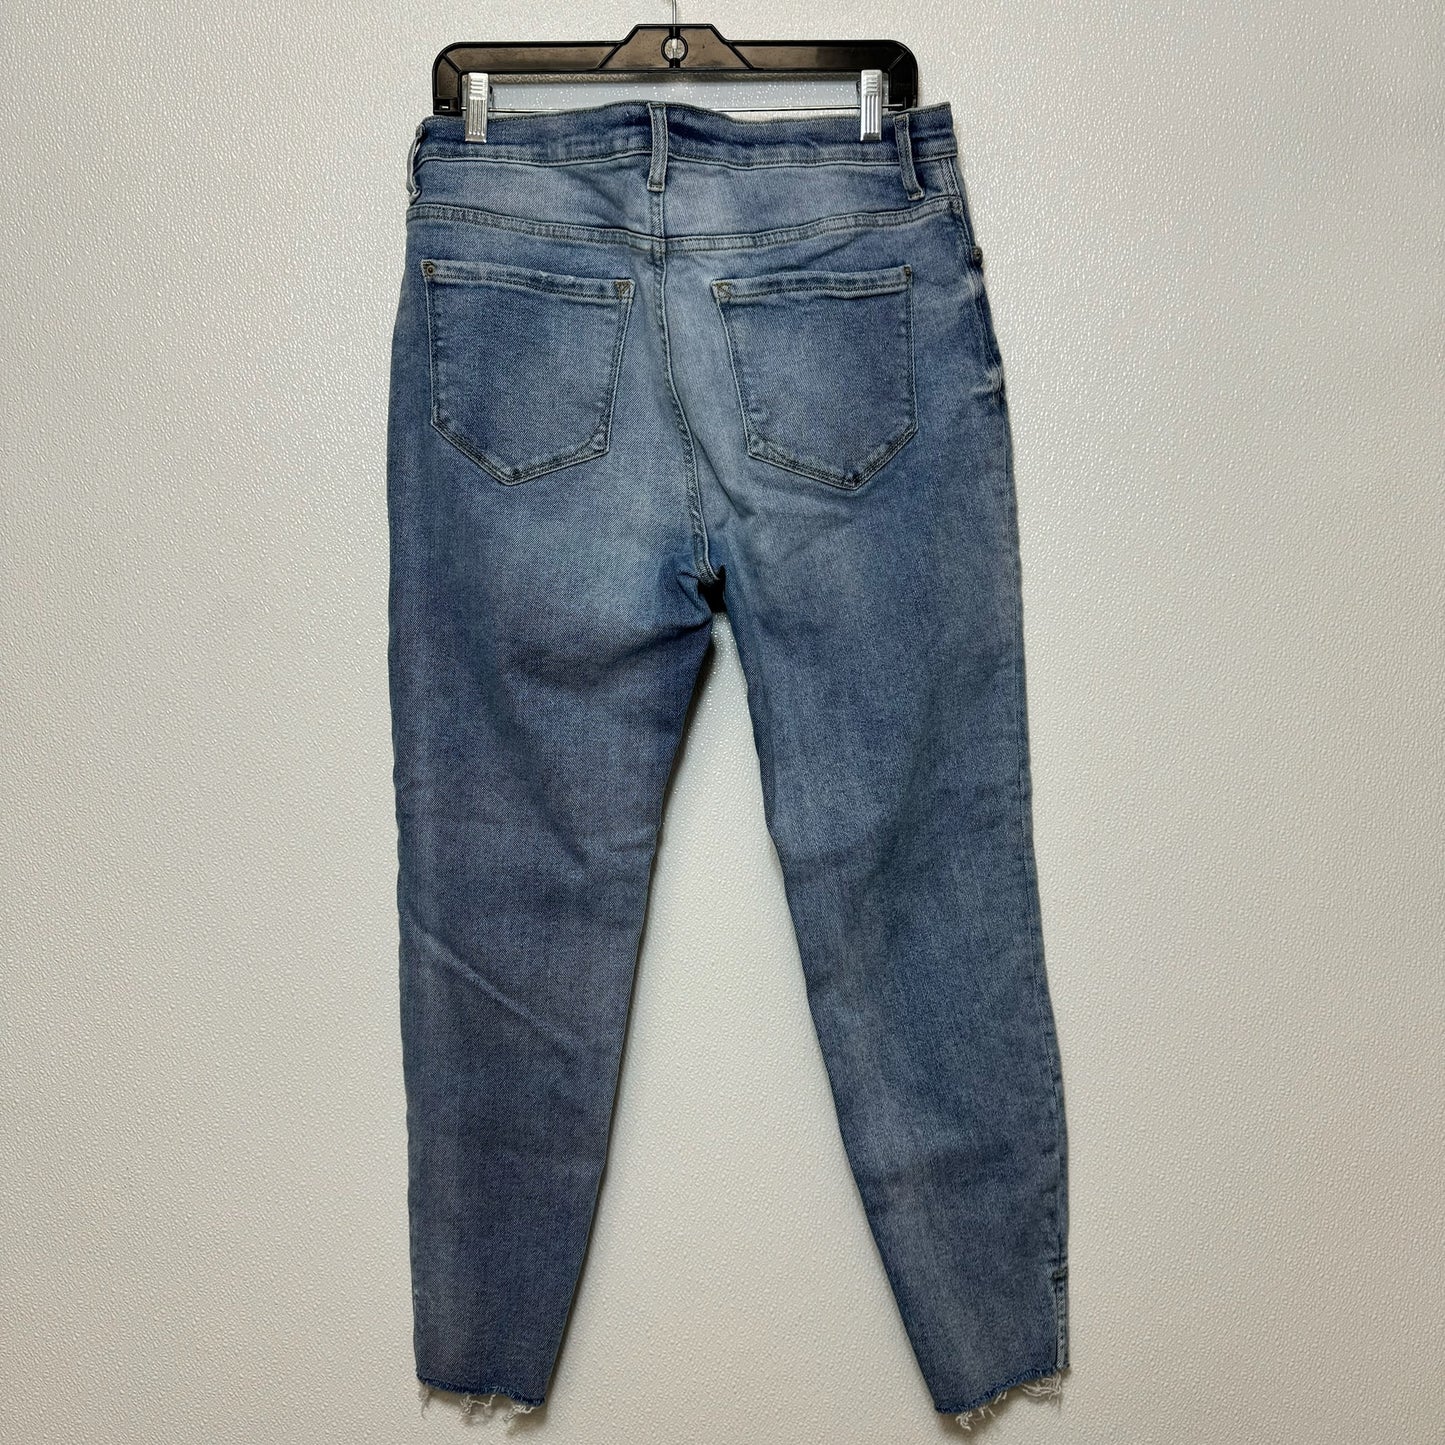 Jeans Skinny By Kensie  Size: 14